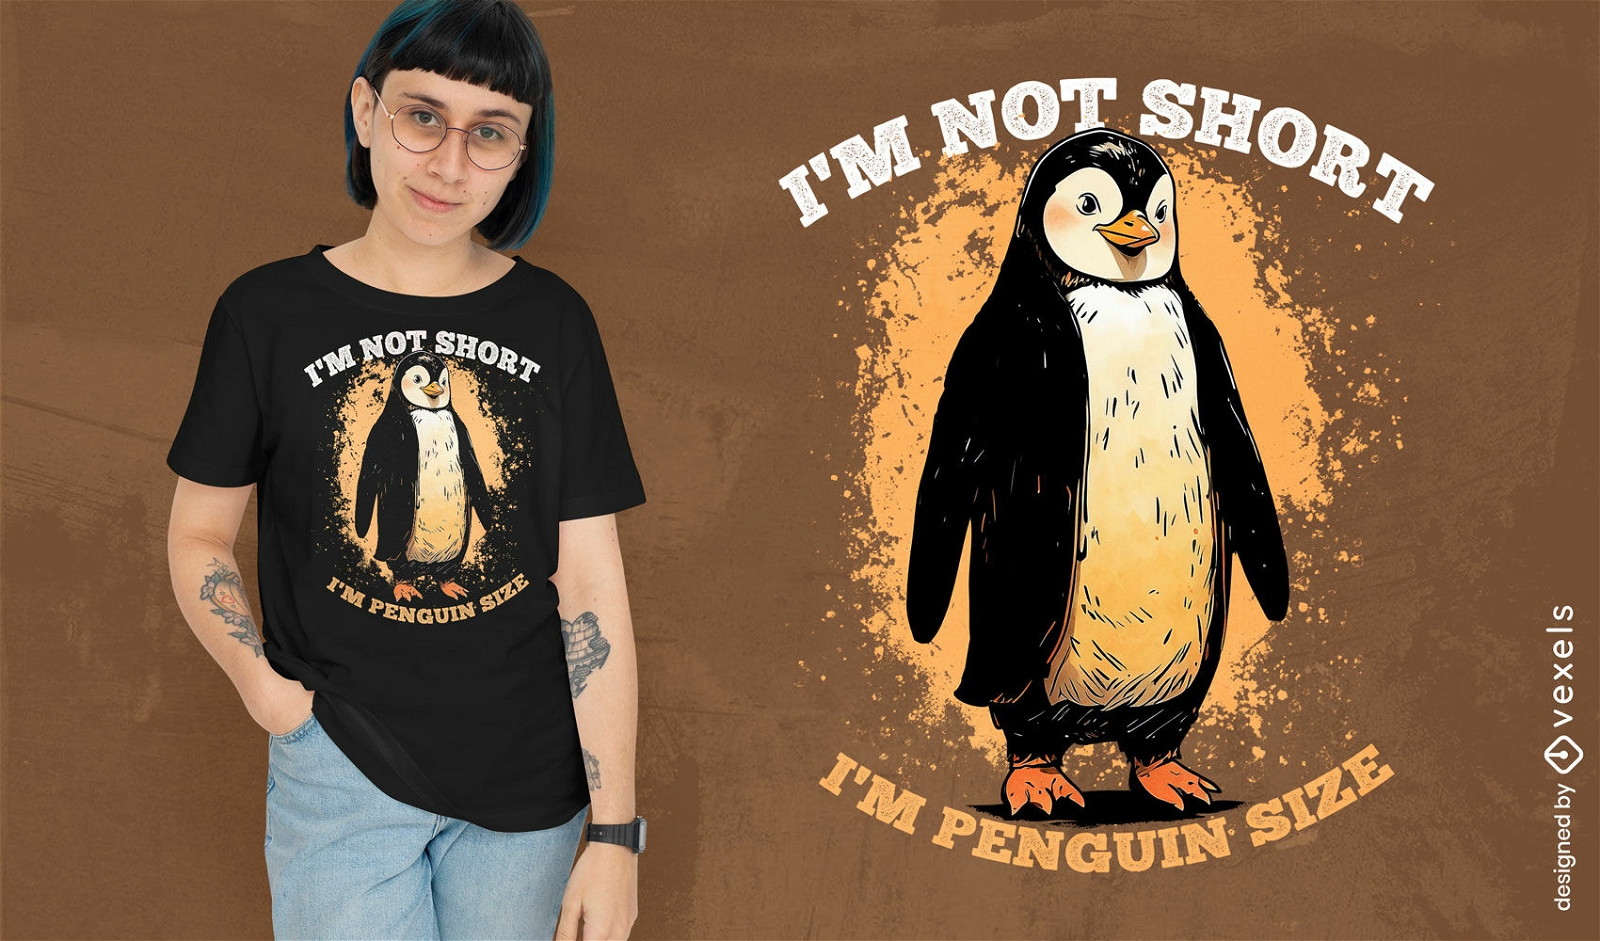 Penguin humor t-shirt design